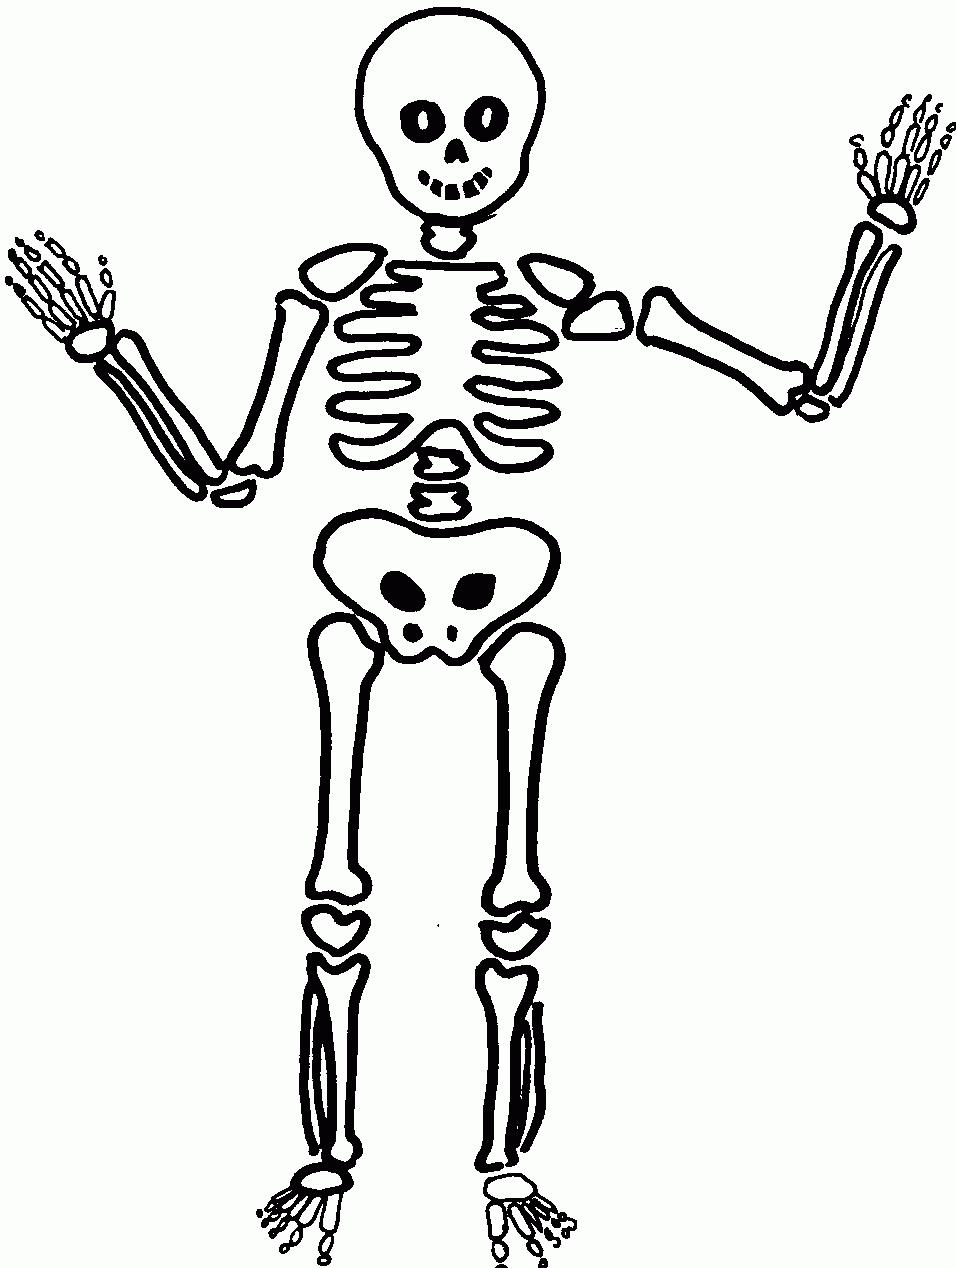 Comment Dessiner Un Squelette | Dessin Squelette, Dessin dedans Squelette A Imprimer